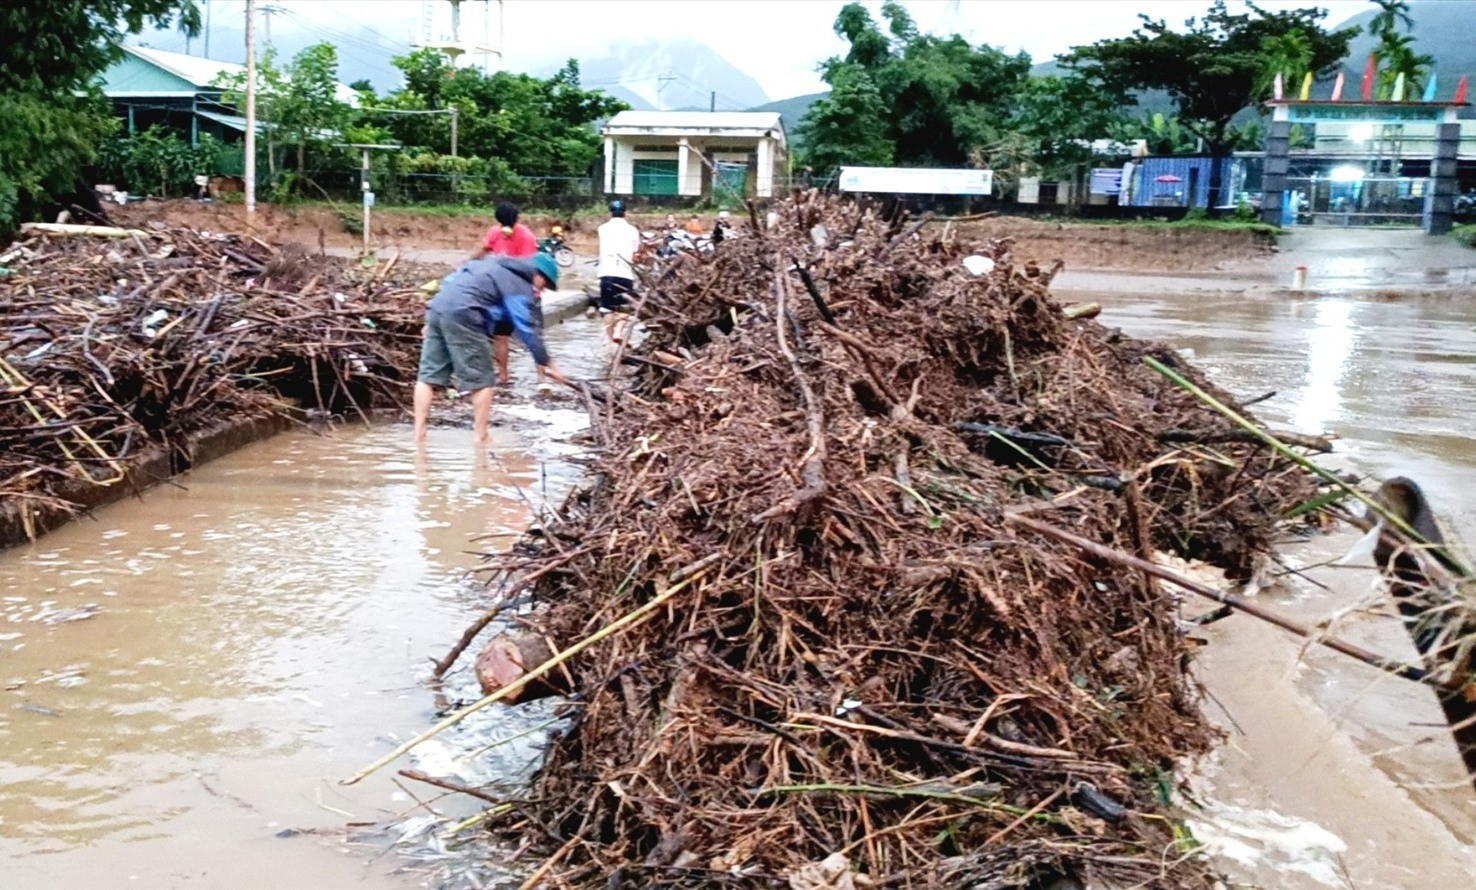 Lực lượng chức năng và người dân xã Đại Hưng dọn cây cối, rác trên cây cầu thuộc tuyến ĐH13.ĐL qua thôn Thái Chấn Sơn vào sáng sớm nay. Ảnh: C.T